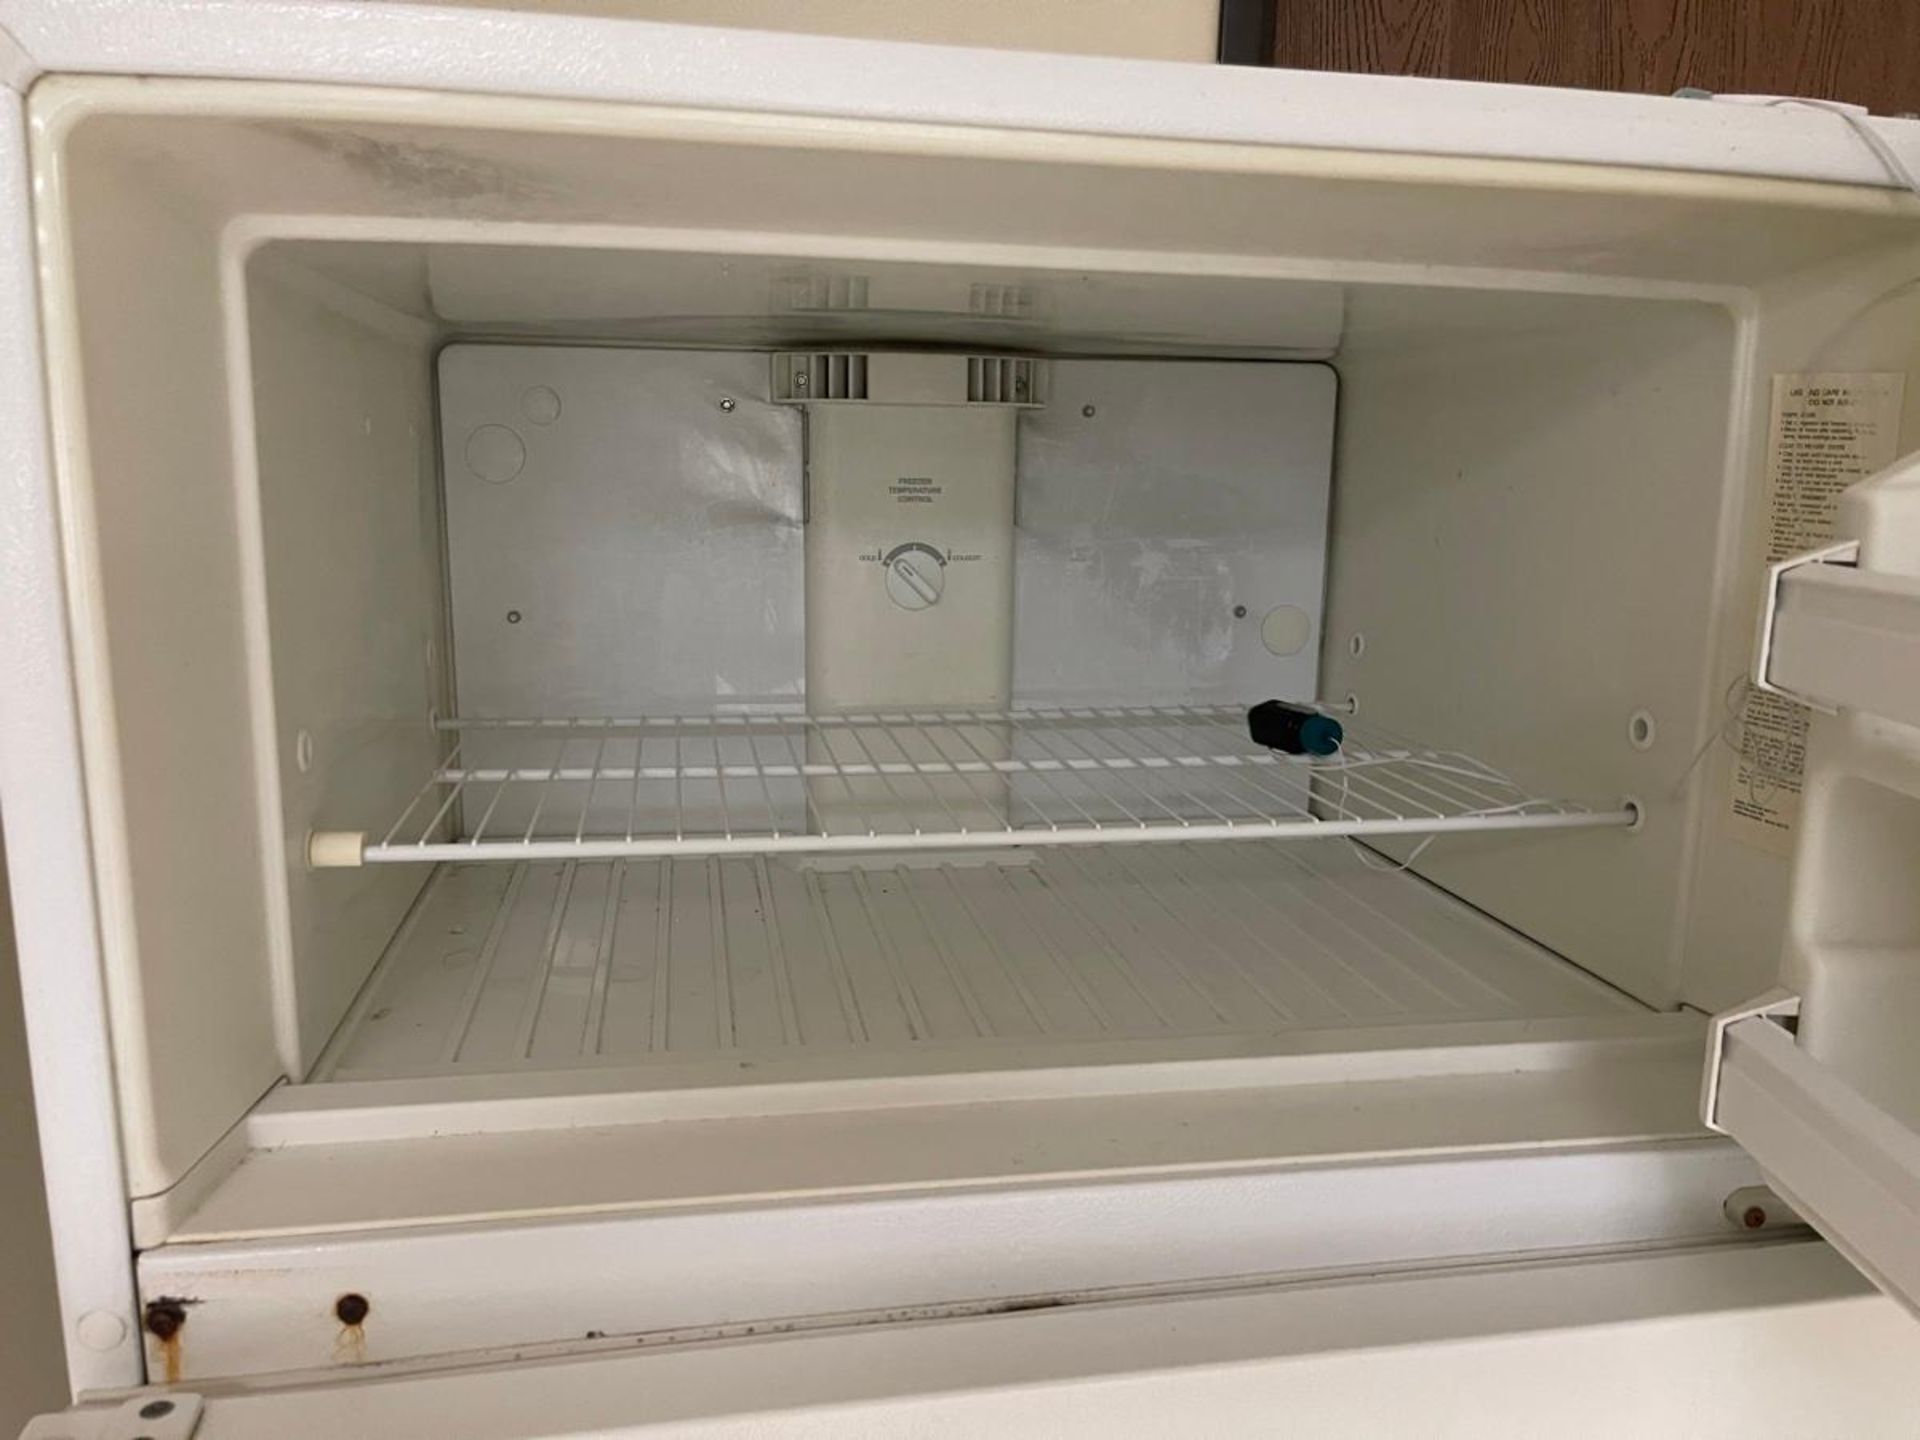 UL Refrigerator - Image 2 of 4